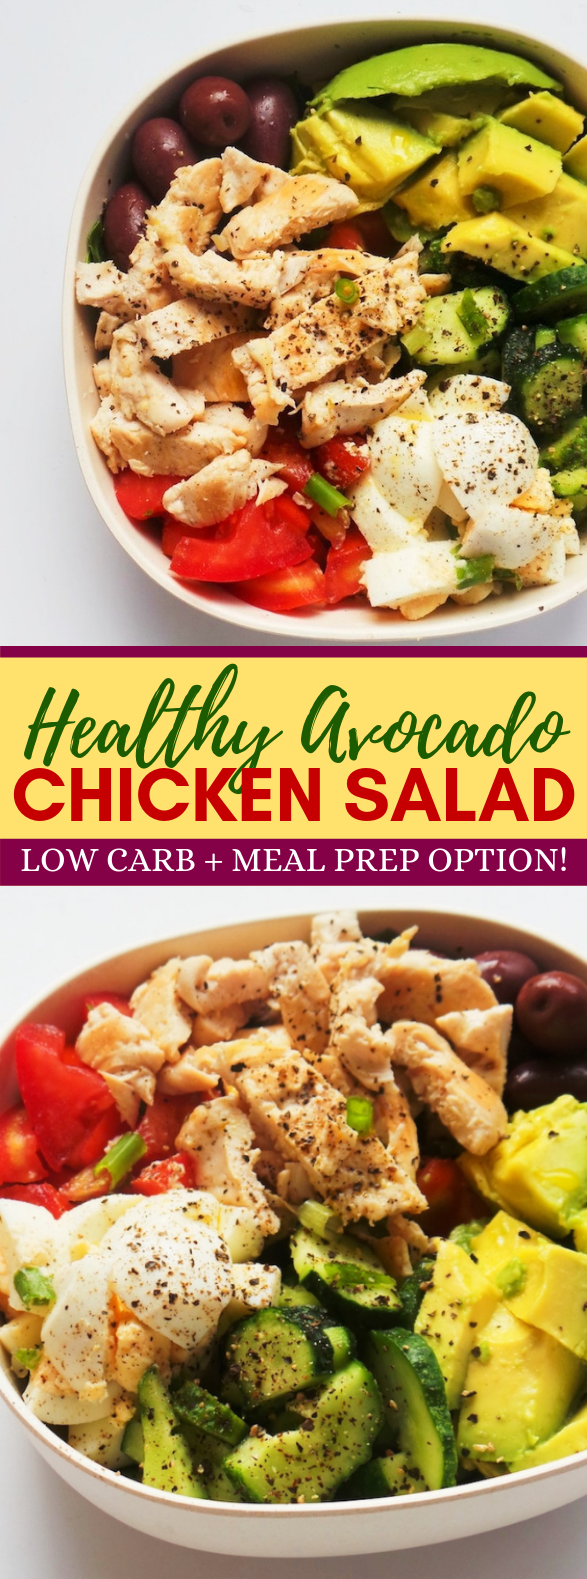 Healthy Avocado Chicken Salad Recipe | Low Carb + Meal Prep Option #healthy #lunch